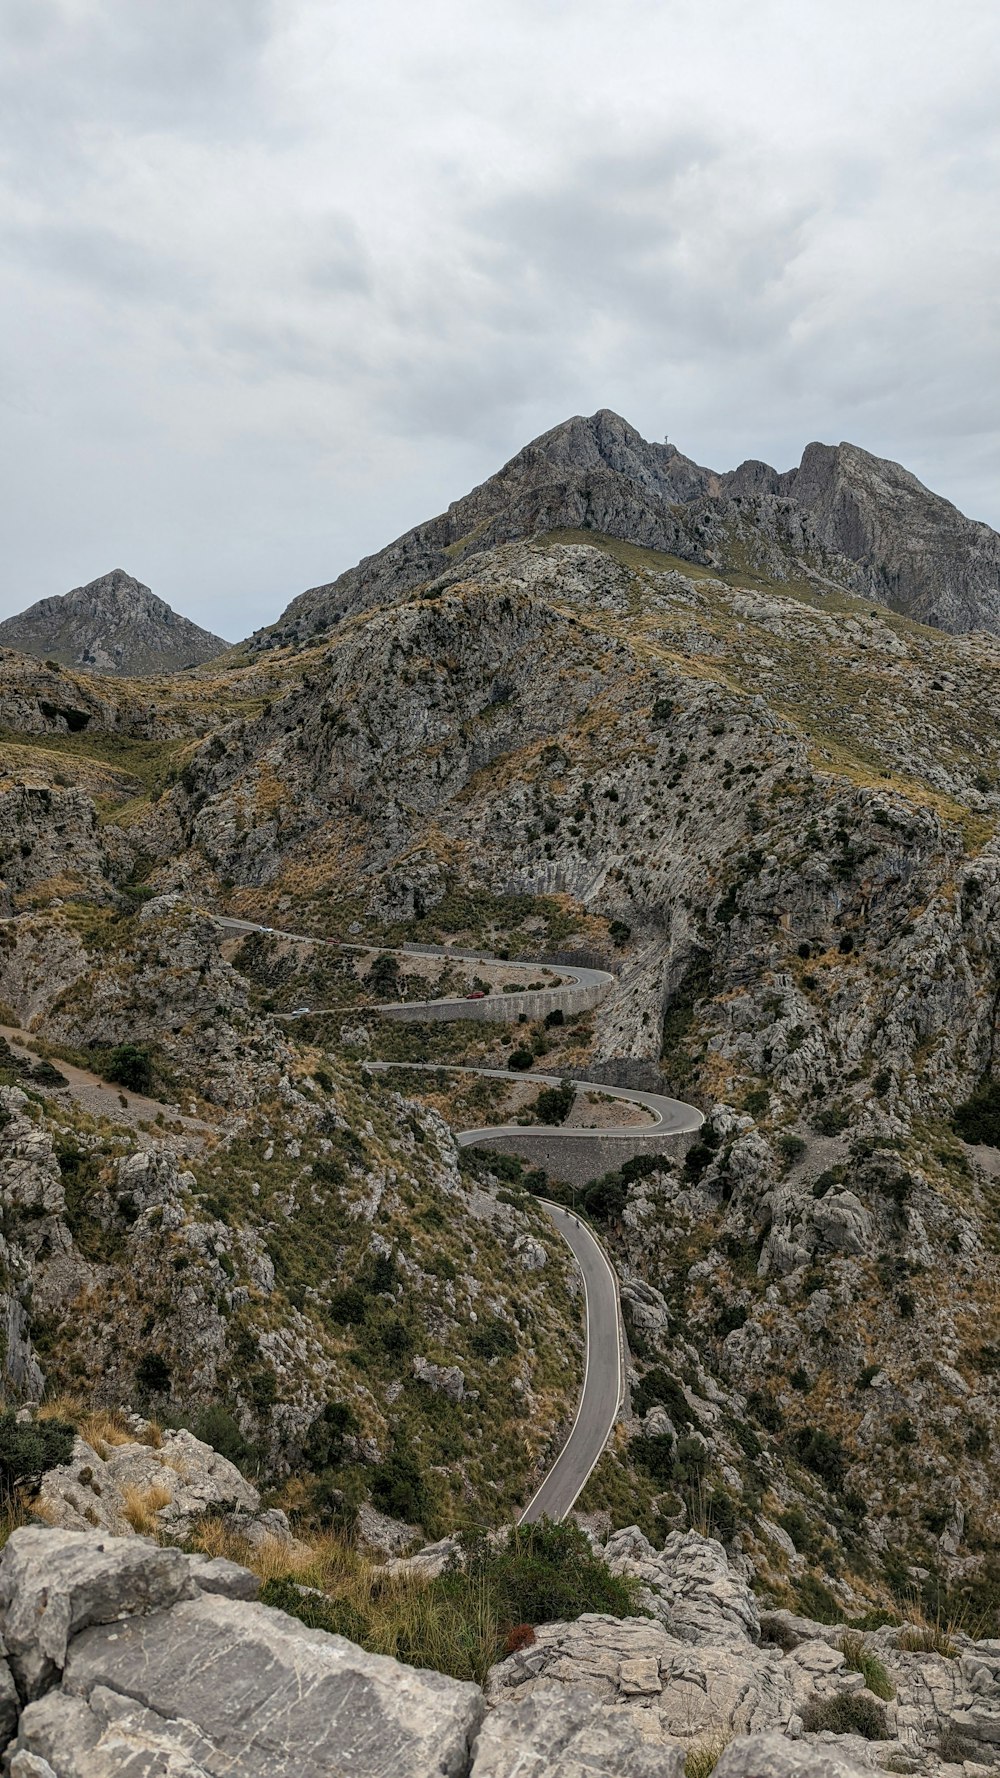 a road going through a rocky mountain